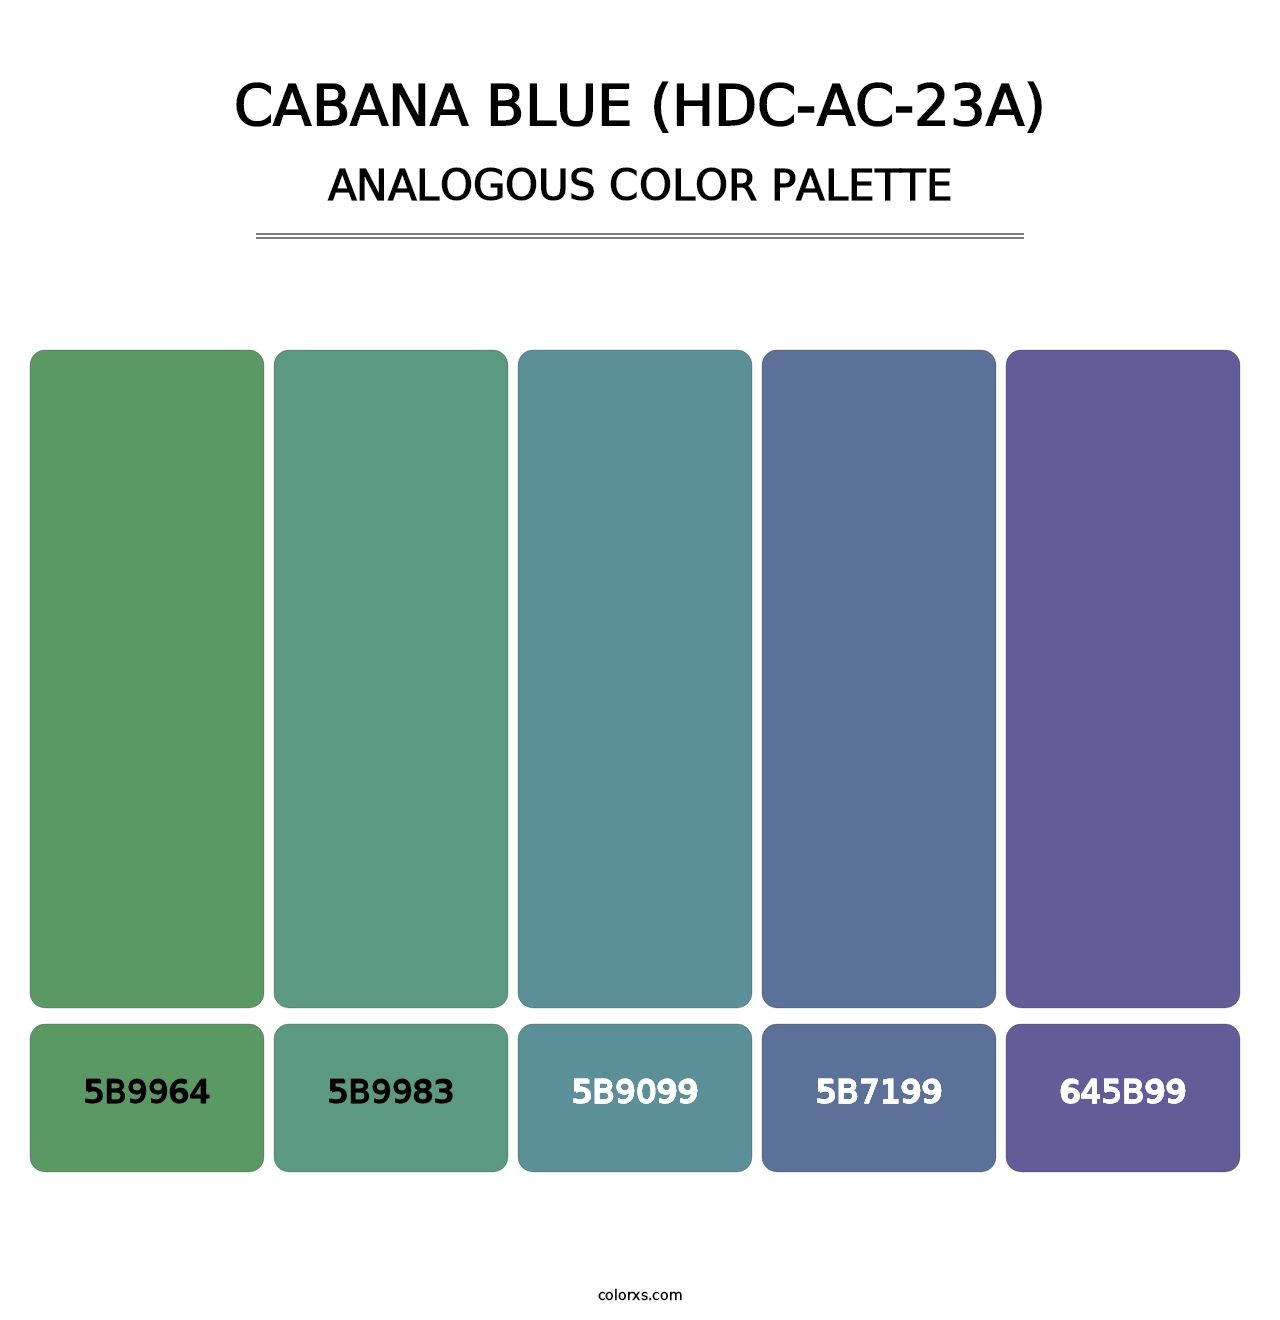 Cabana Blue (HDC-AC-23A) - Analogous Color Palette